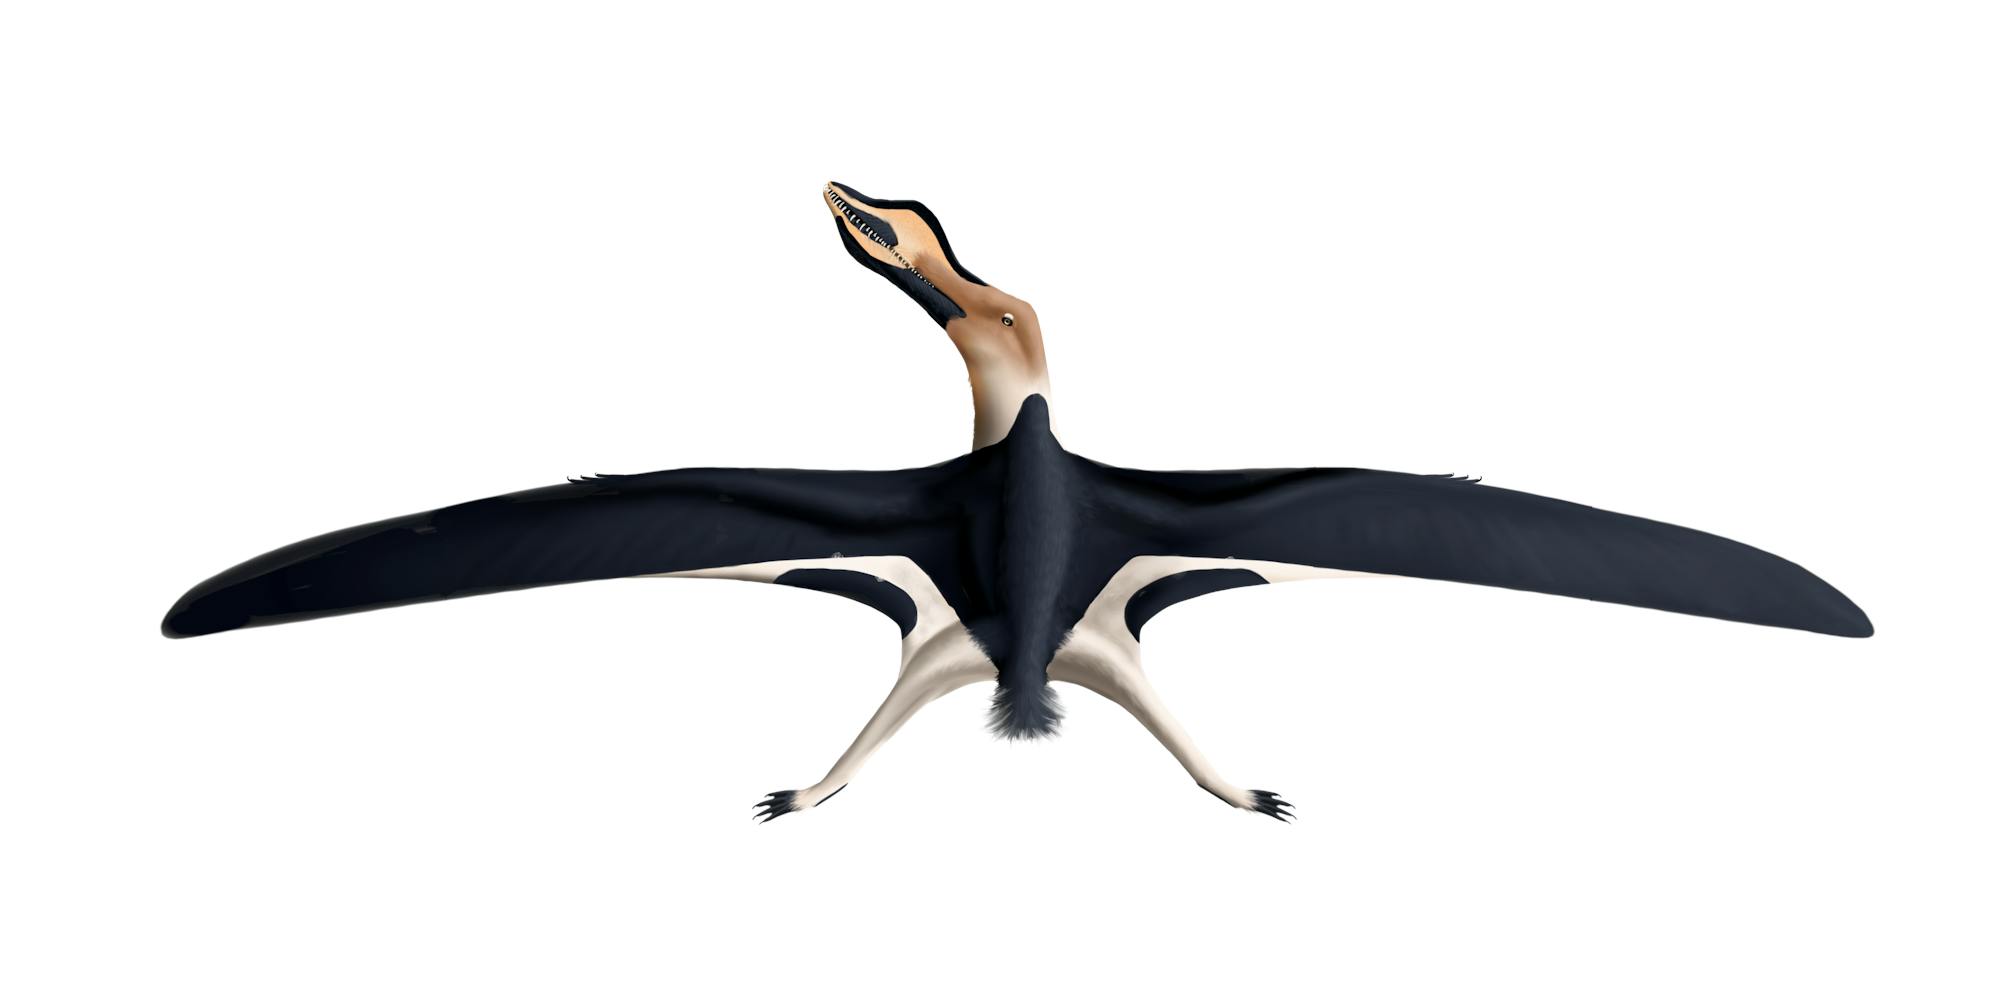 Aetodactylus